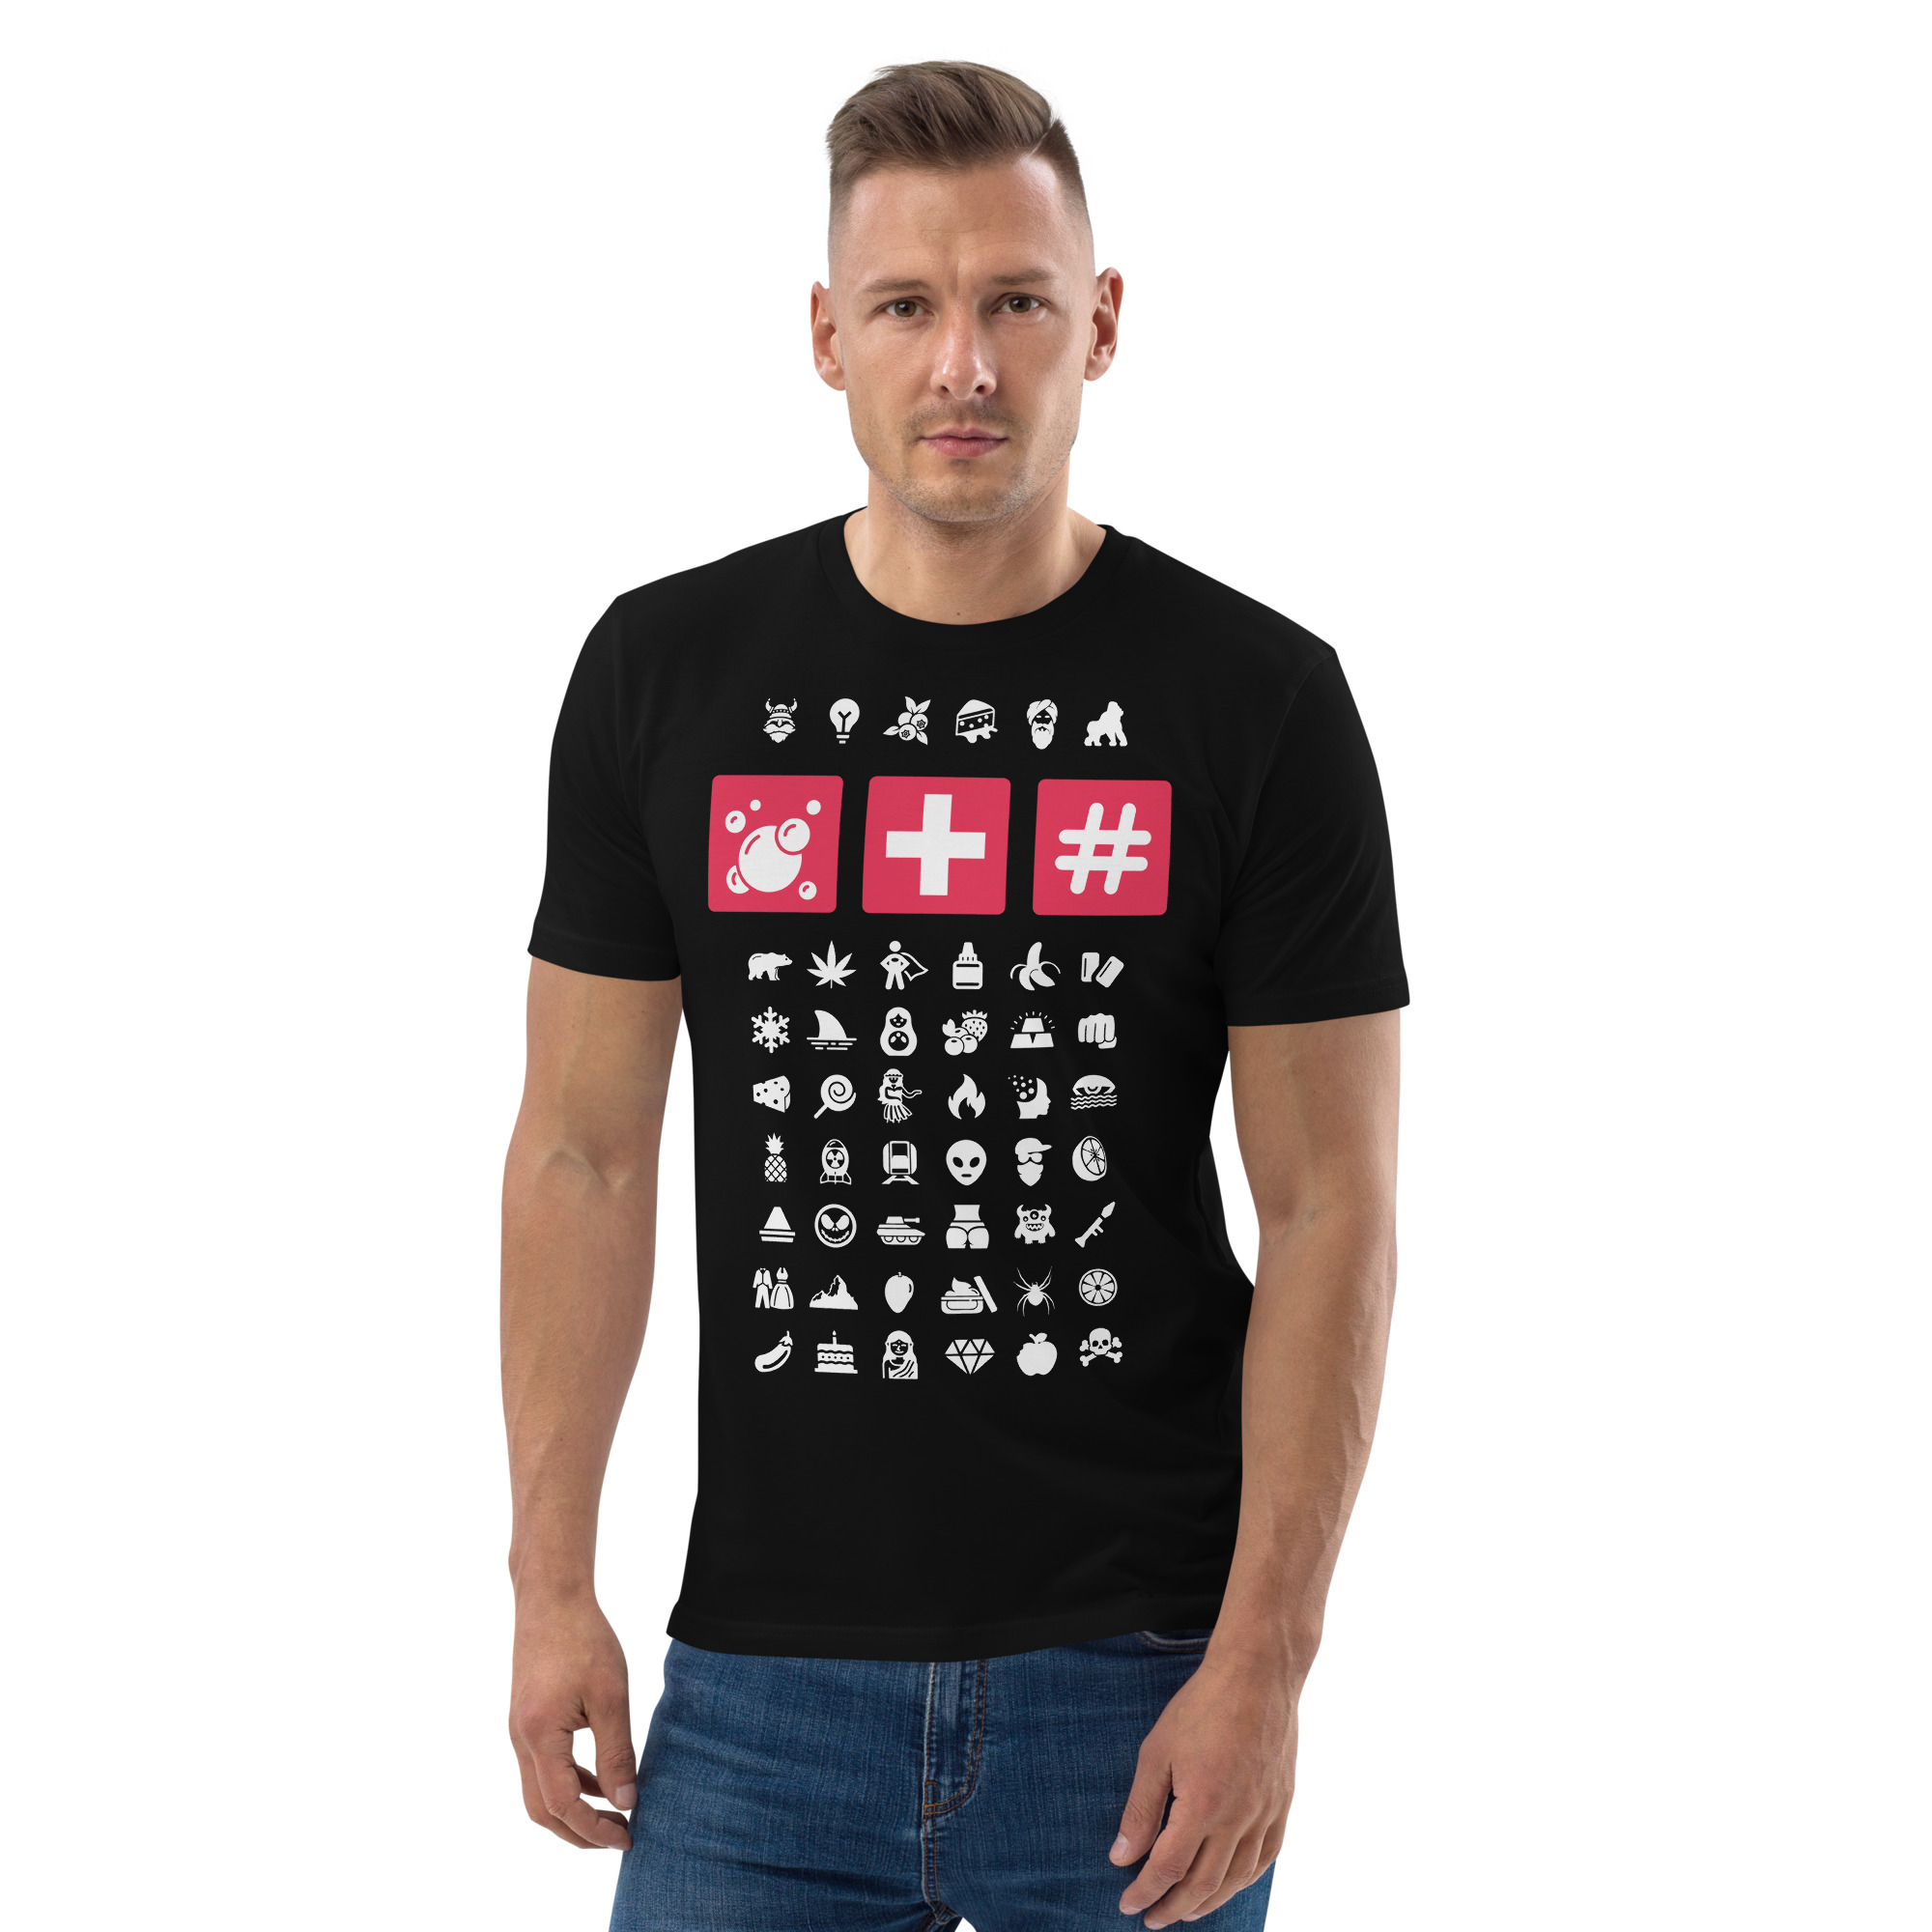 T-shirt – SMW – Bubble Hash T-Shirts Wearyt